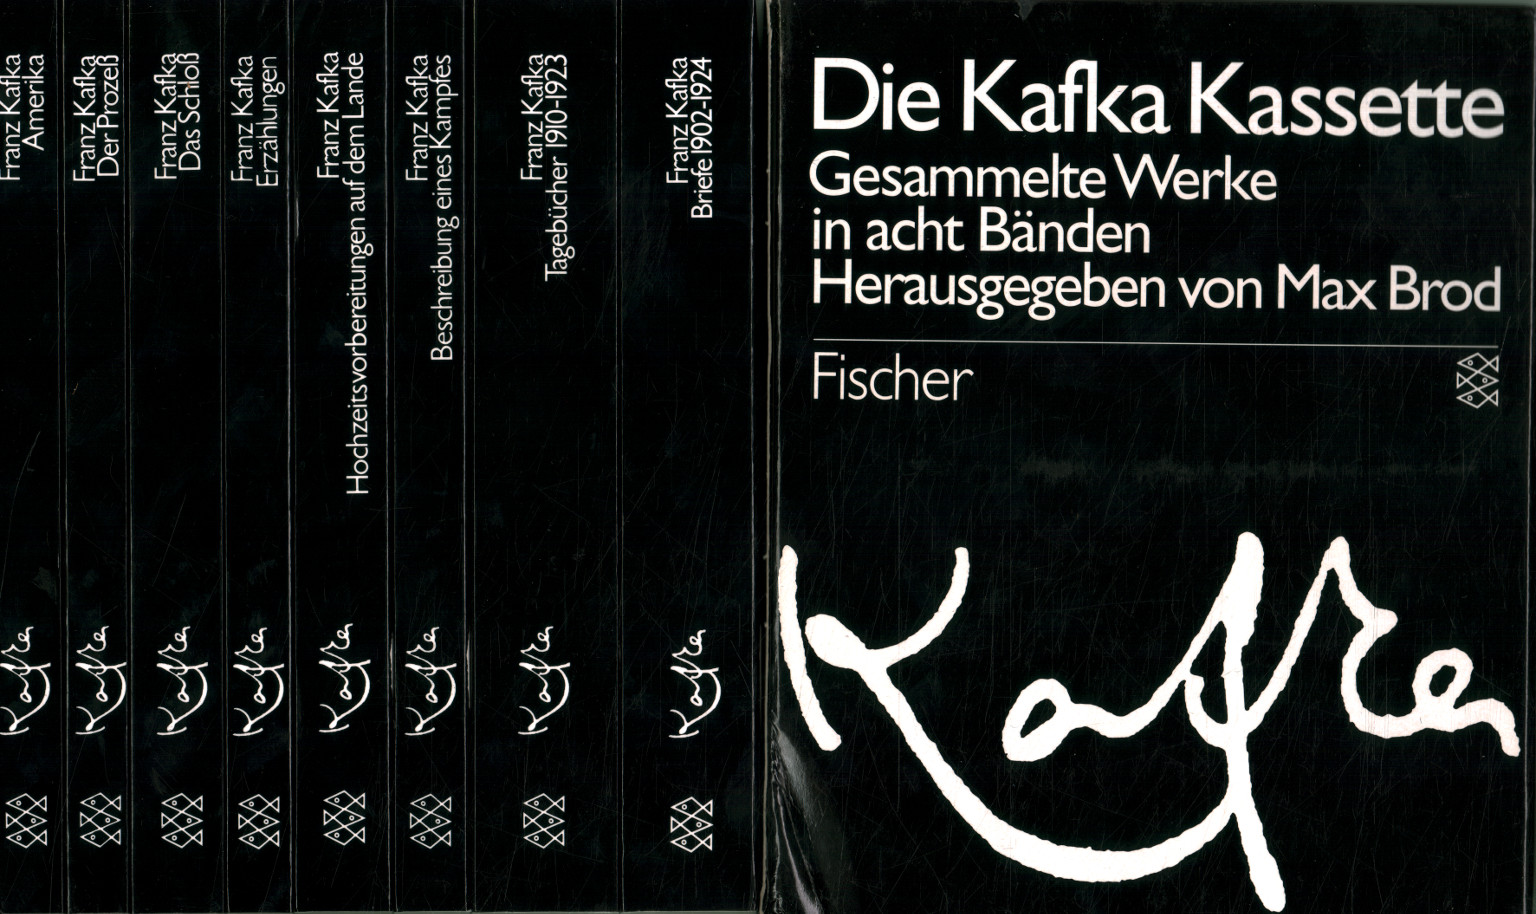 Die Kafka Cassette. Gesammelte Werke in%, Die Kafka Kassette. Gesammelte Werke en%